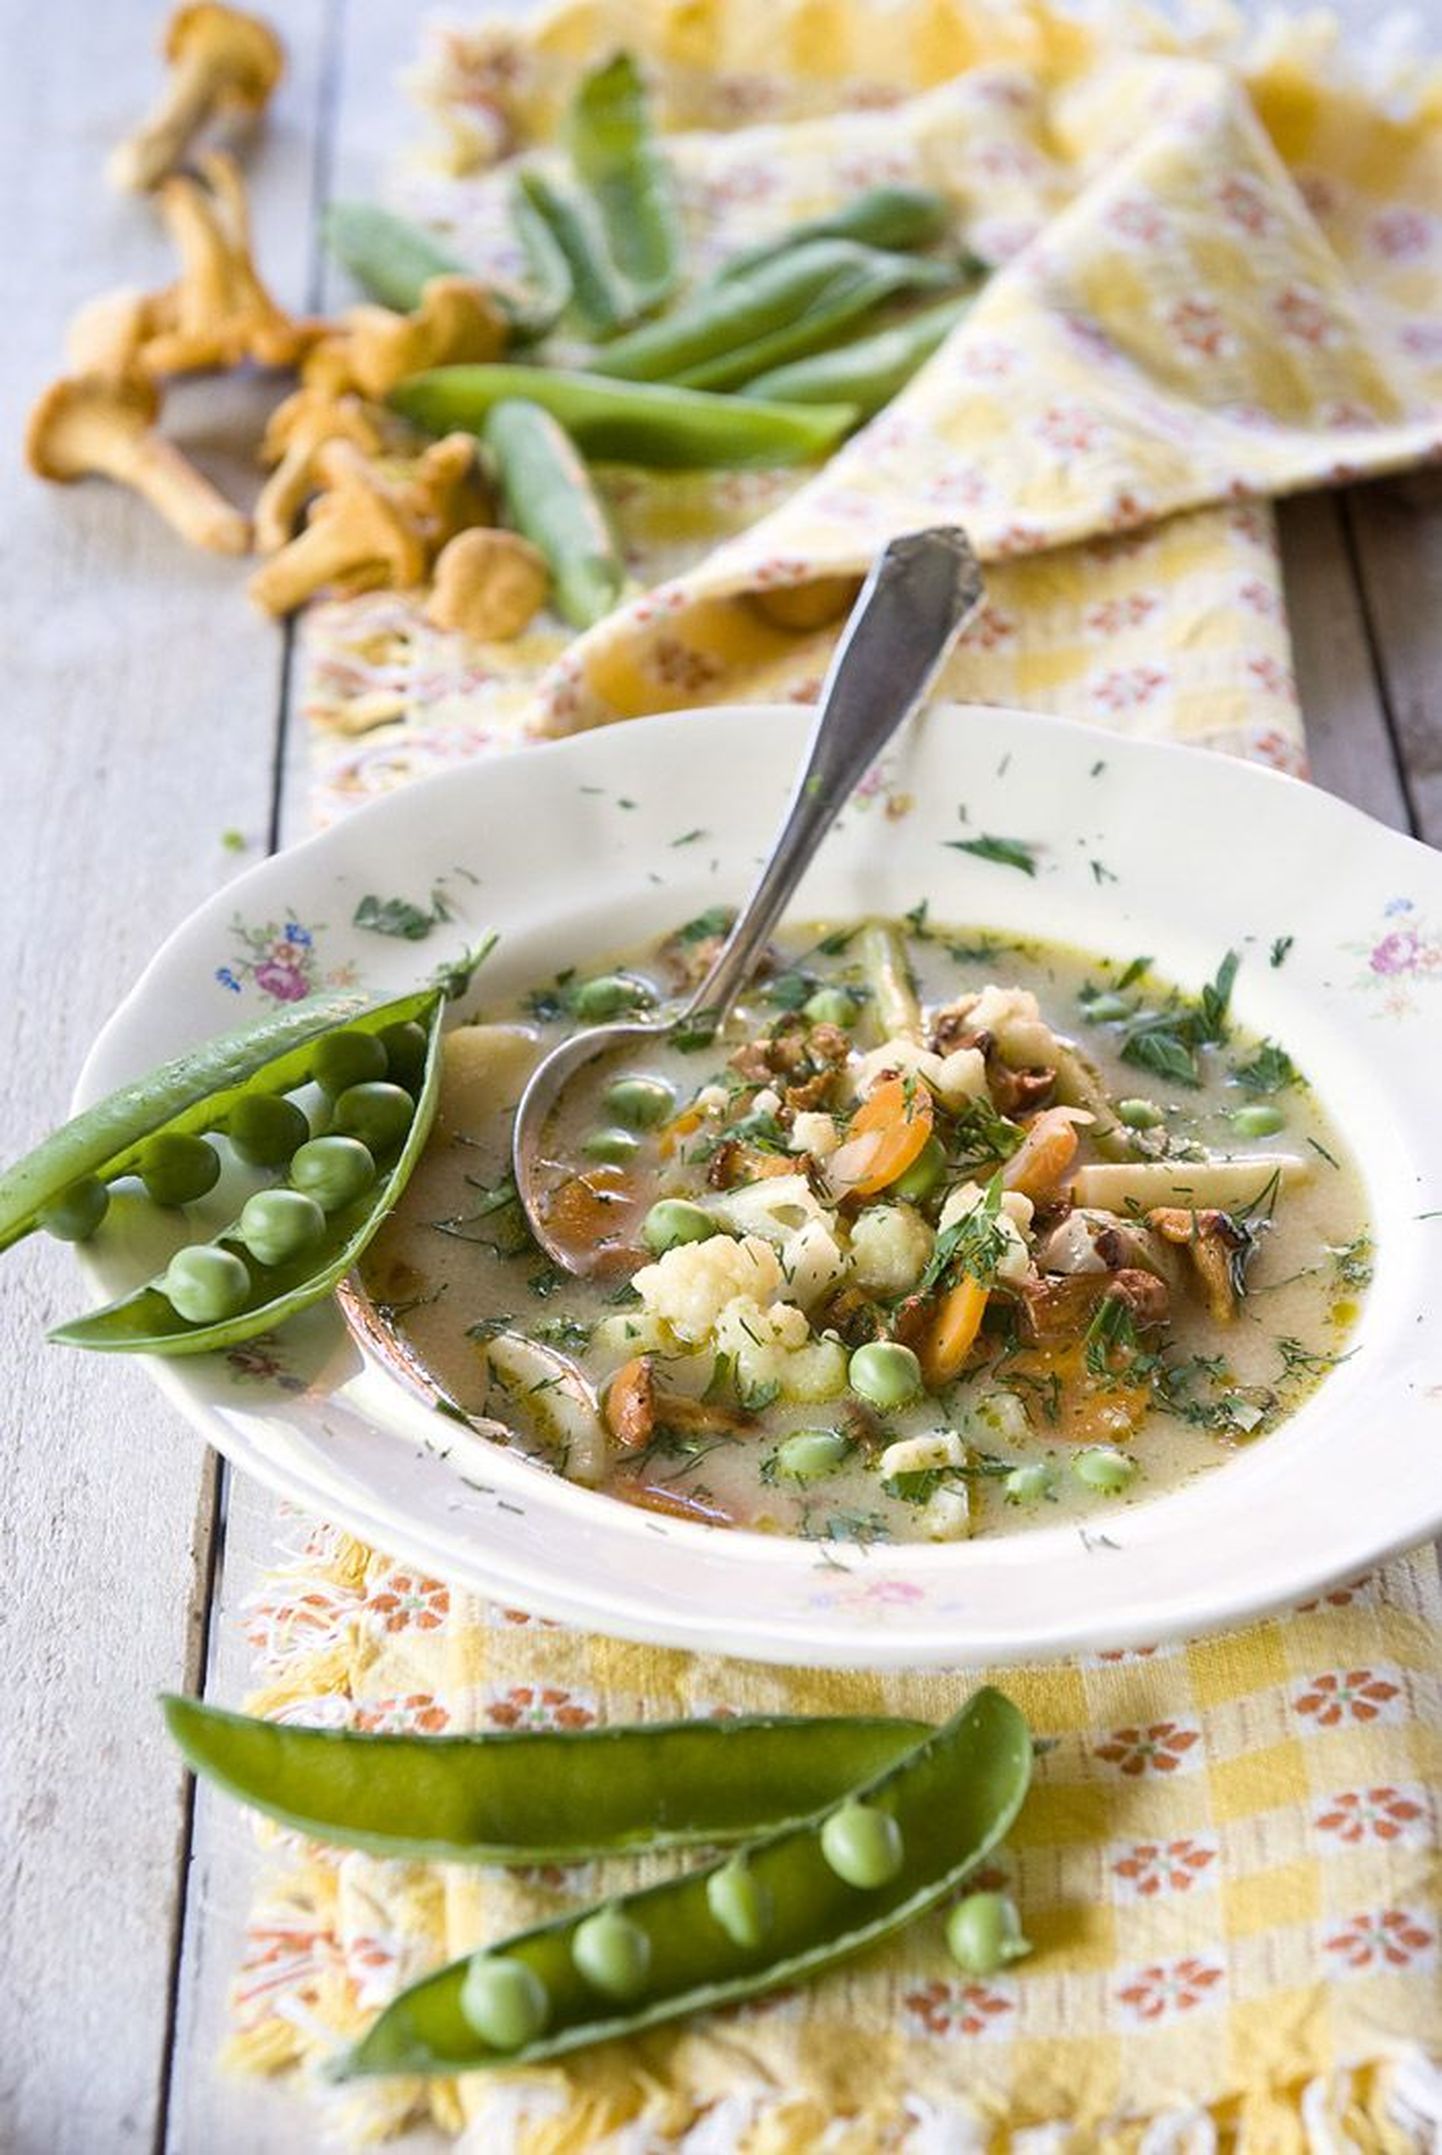 В летний суп из лисичек можно добавить зеленую фасоль  — получится и красиво, и вкусно.